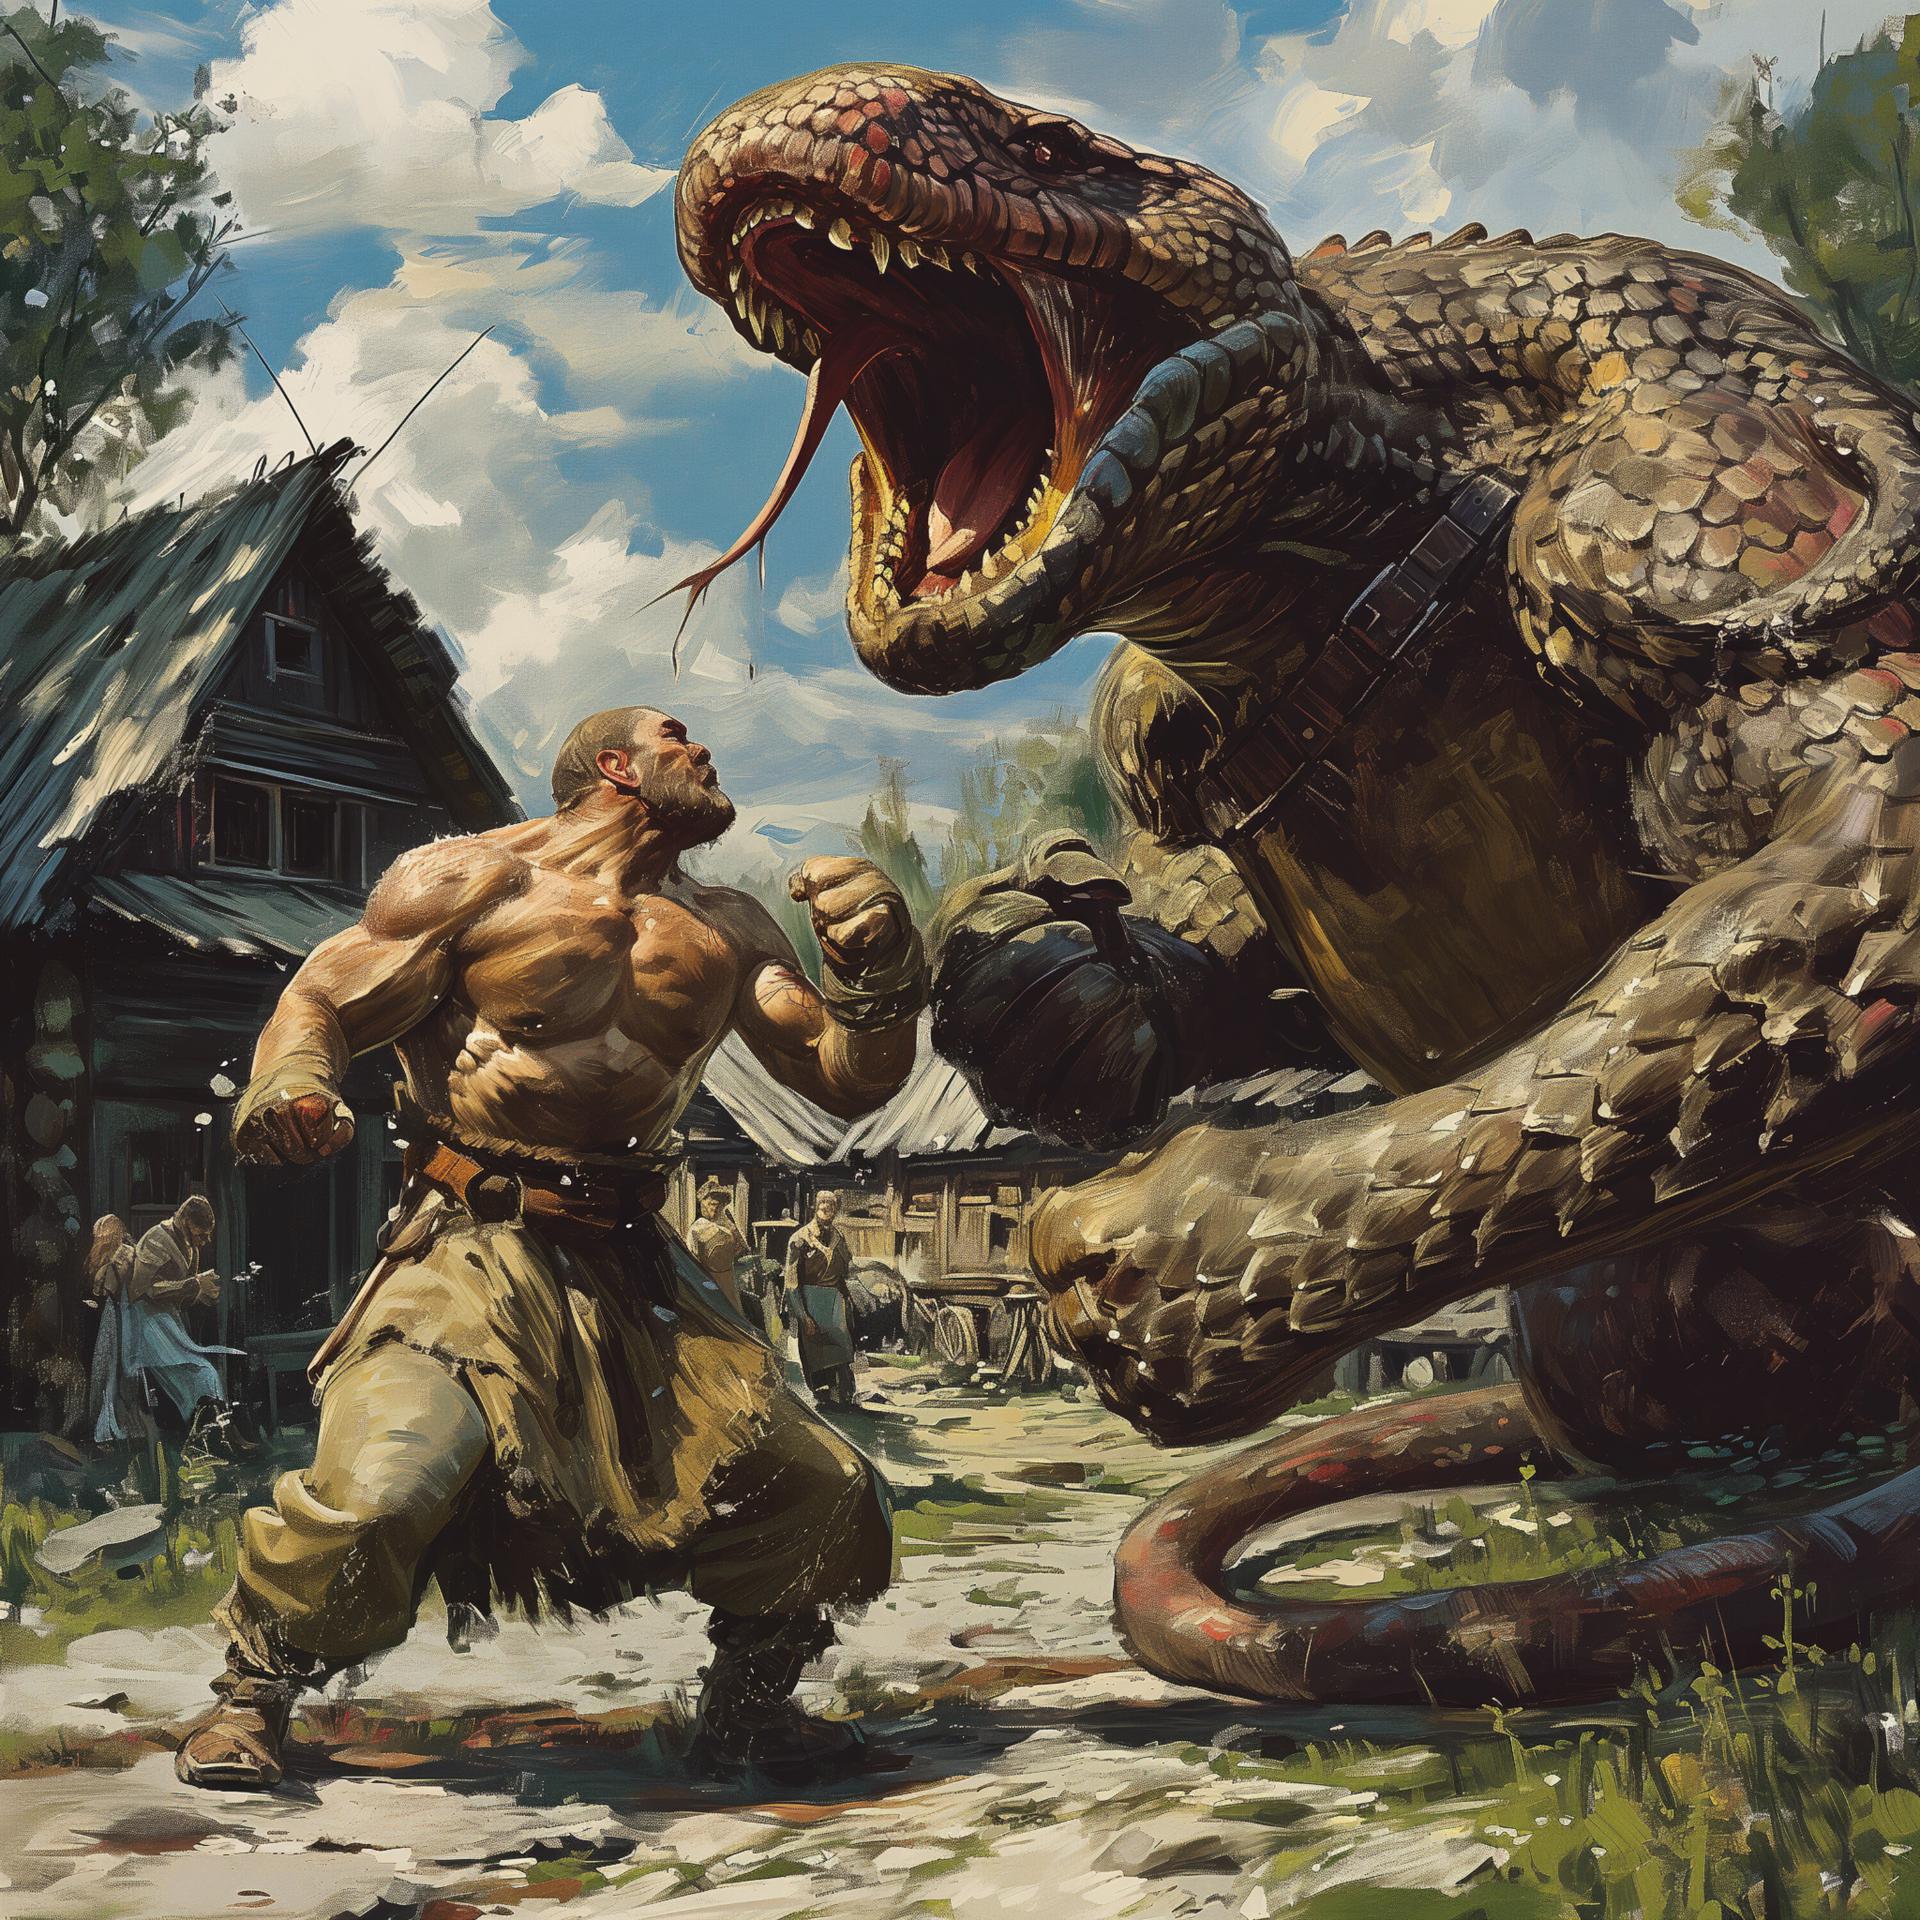 Постер альбома Русы против ящеров